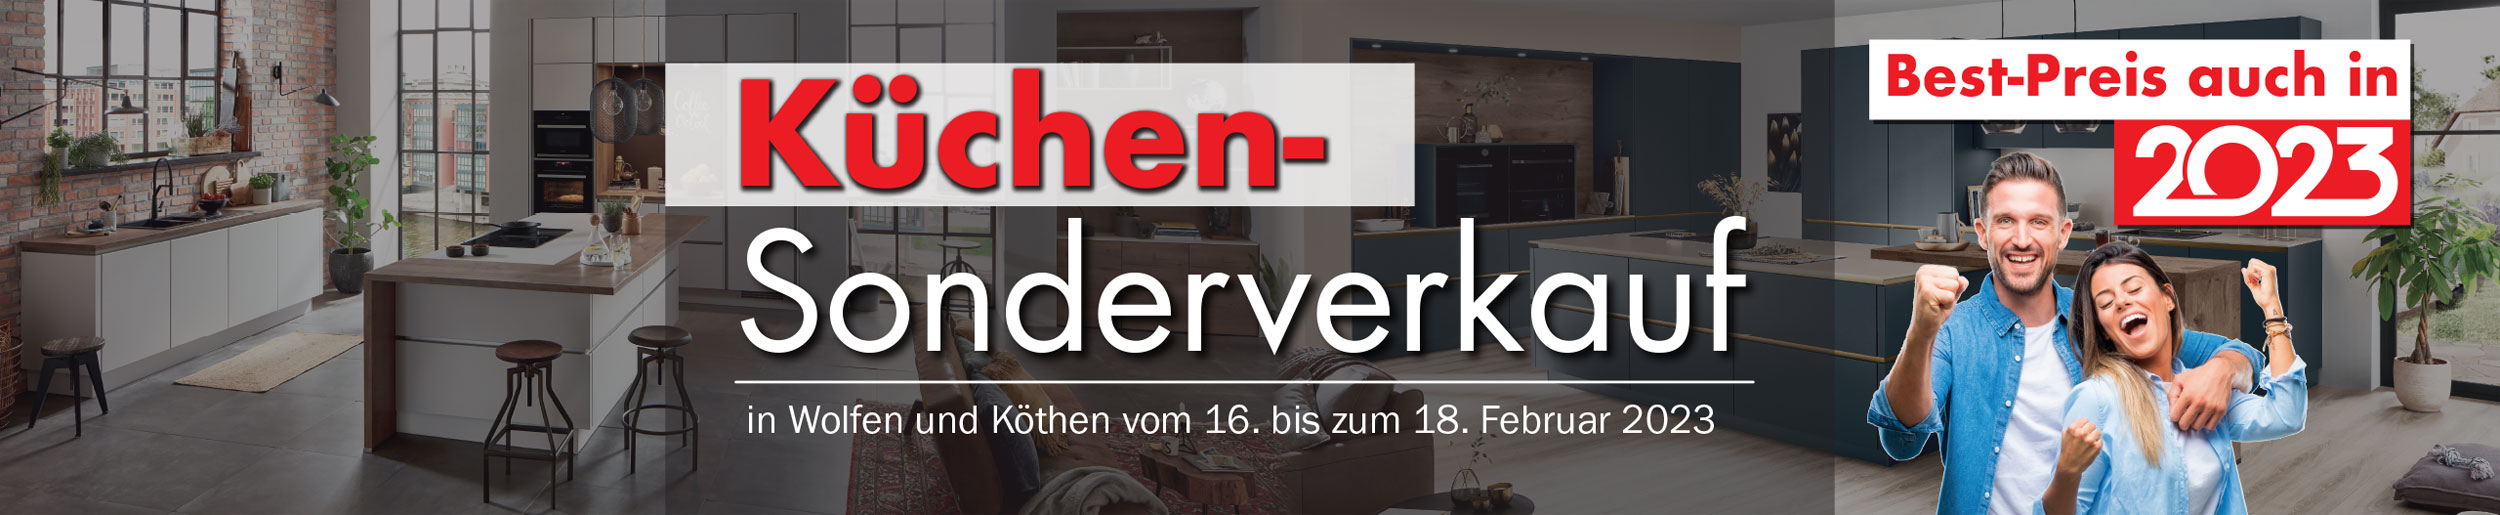 3 Tage exklusiver Küchen-Sonderverkauf bei Möbel Mit in Wolfen und Köthen!